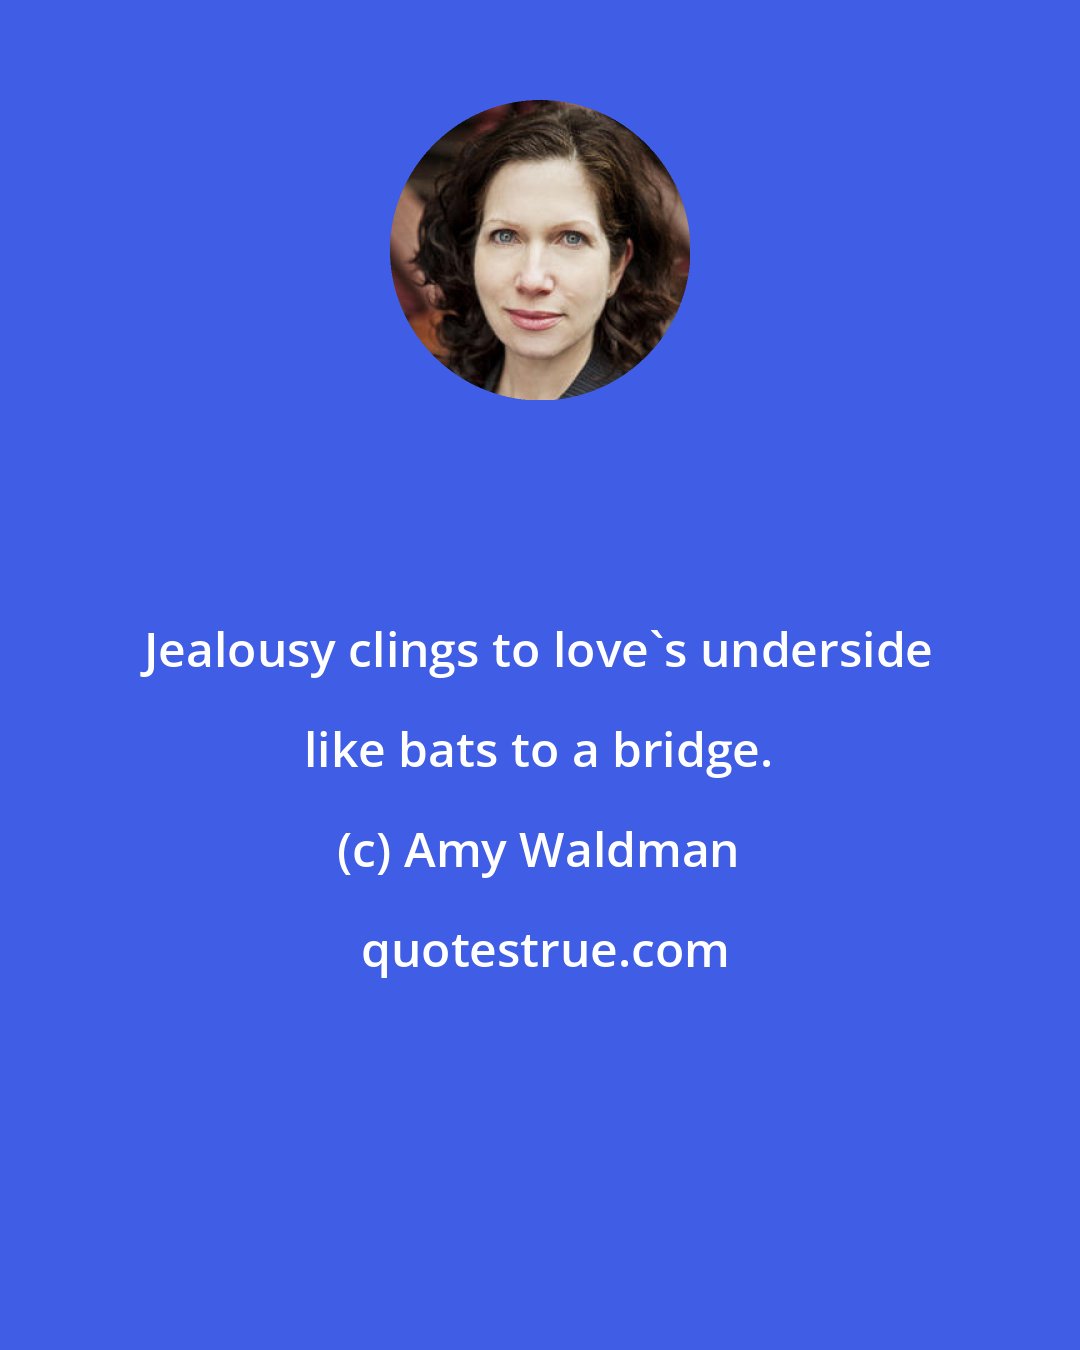 Amy Waldman: Jealousy clings to love's underside like bats to a bridge.